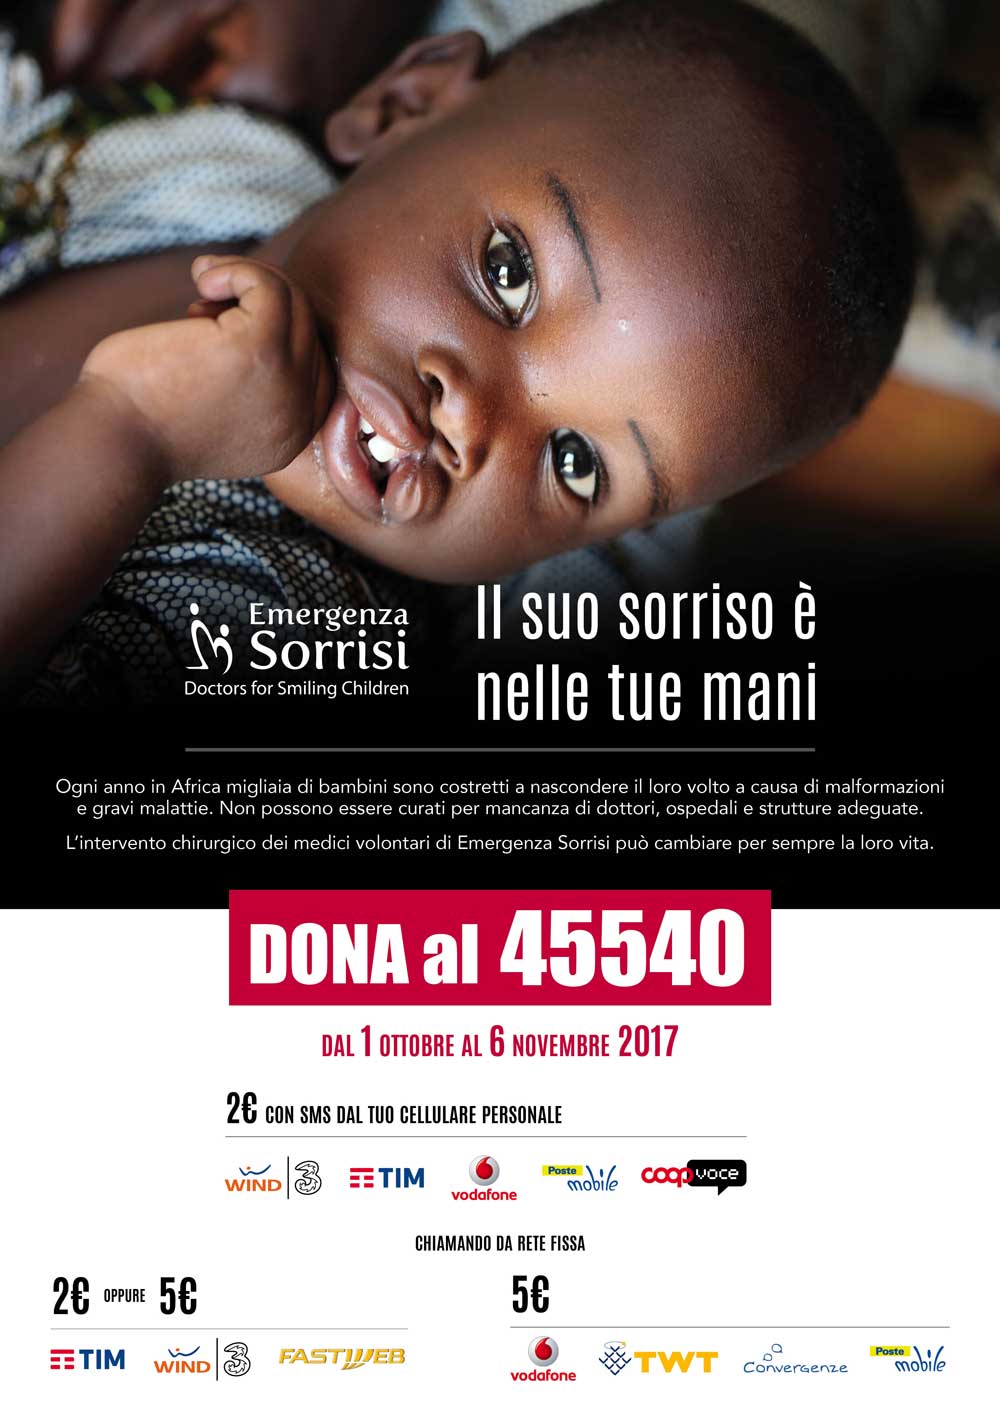  “Emergenza Sorrisi” lancia la campagna “Doniamo un Sorriso”: dal 1 Ottobre al 6 Novembre